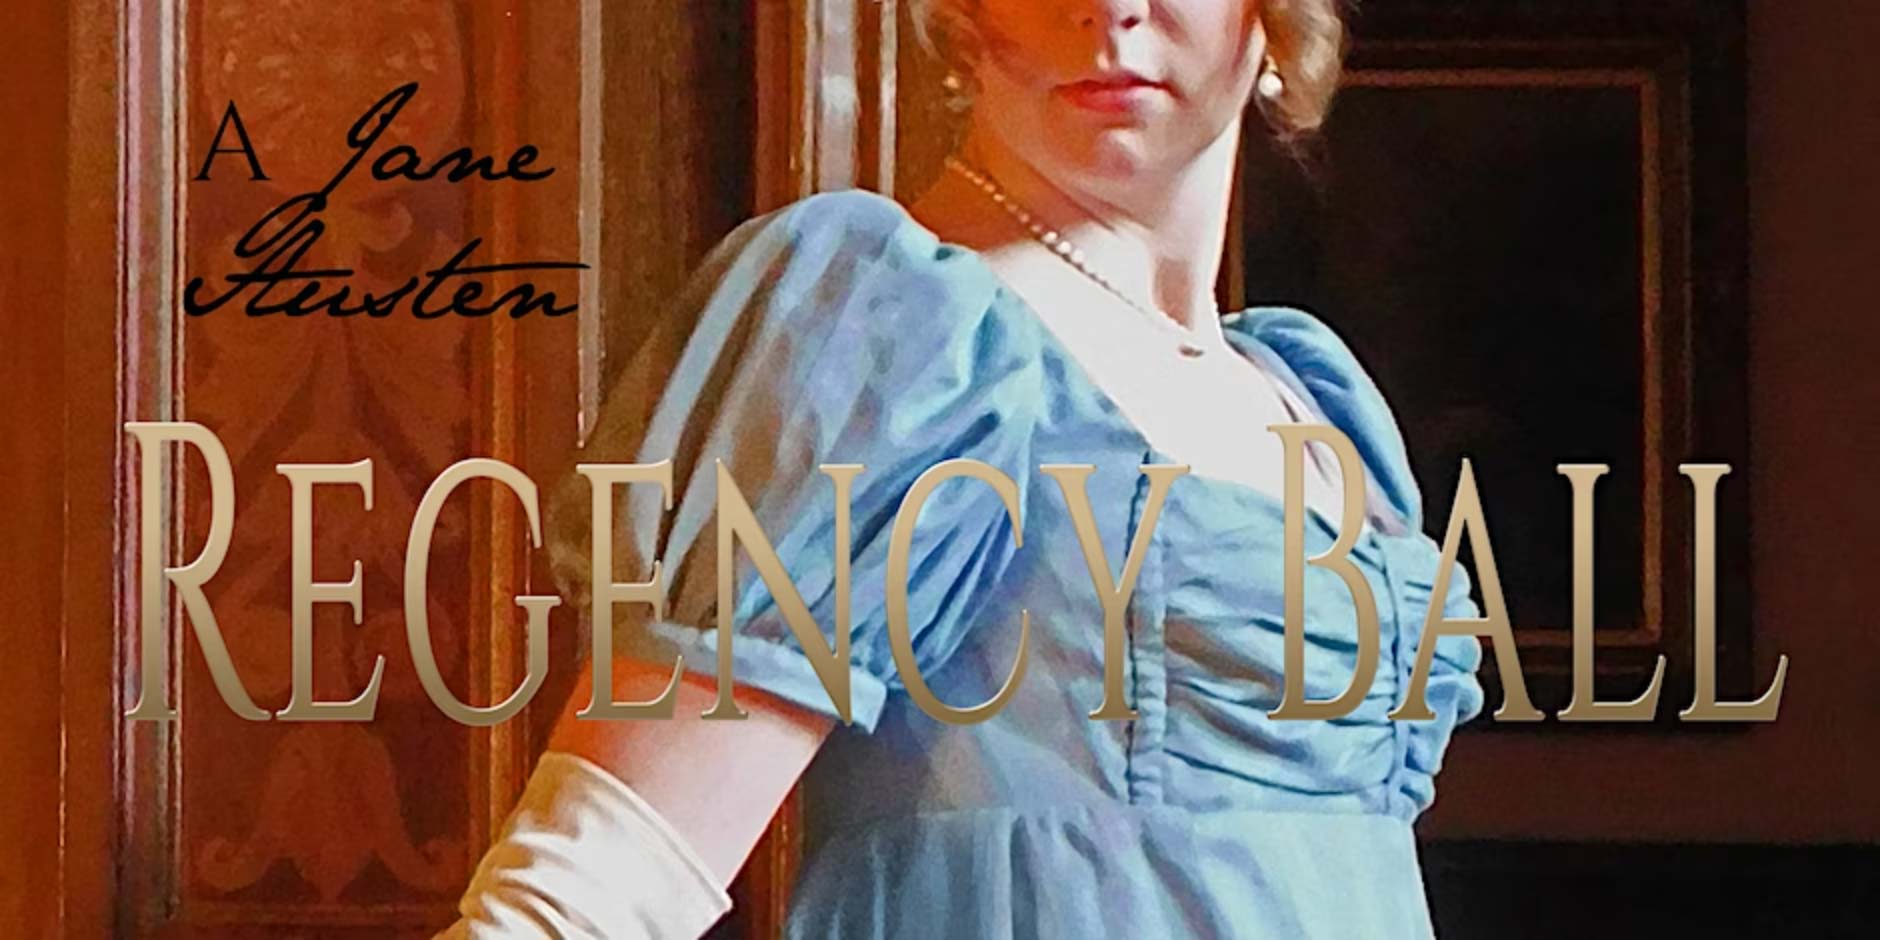 A Jane Austen Regency Ball